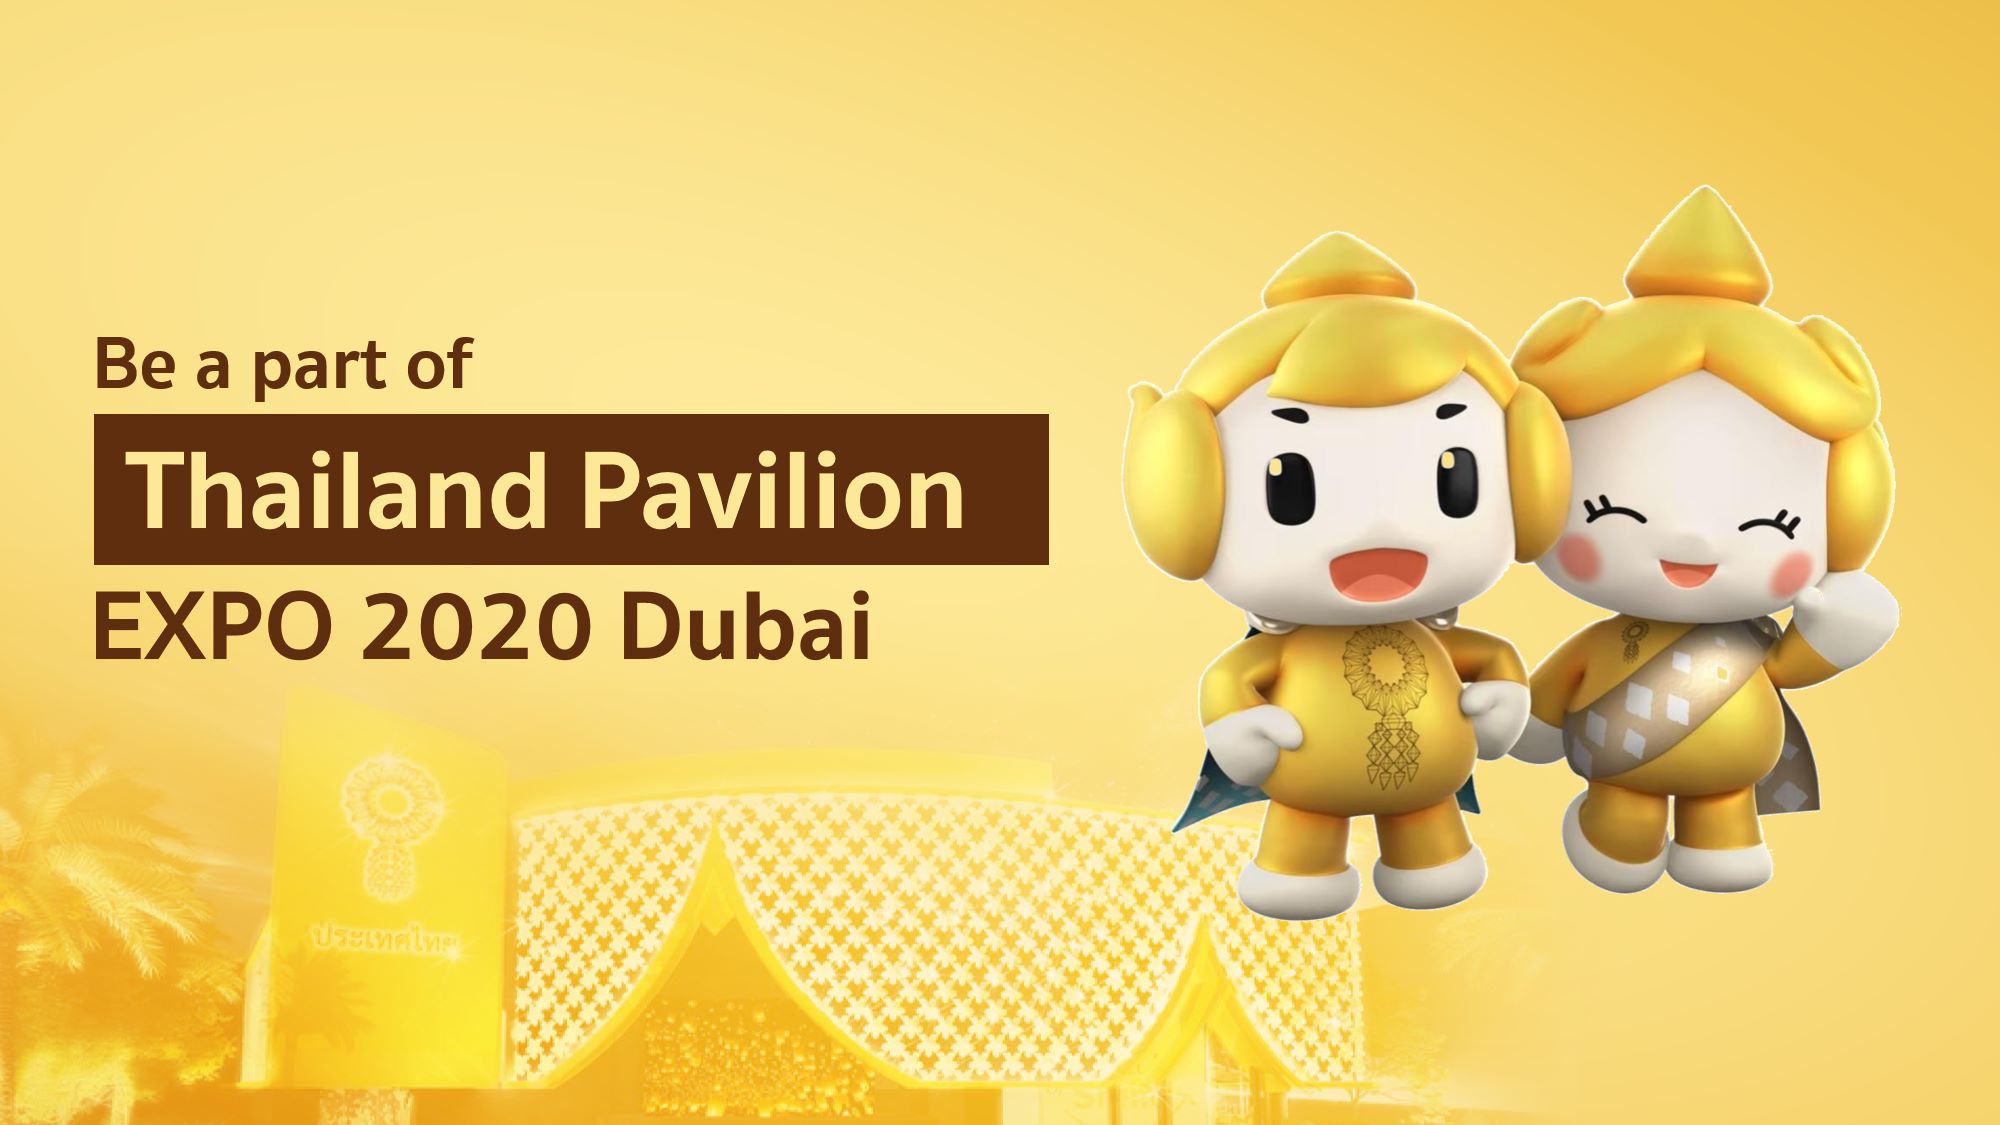 Depa ขาดงบประมาณ ขอสนับสนุนช่วยอาคารแสดงประเทศไทย สร้างโอกาสใหม่ในงาน World Expo 2020 Dubai